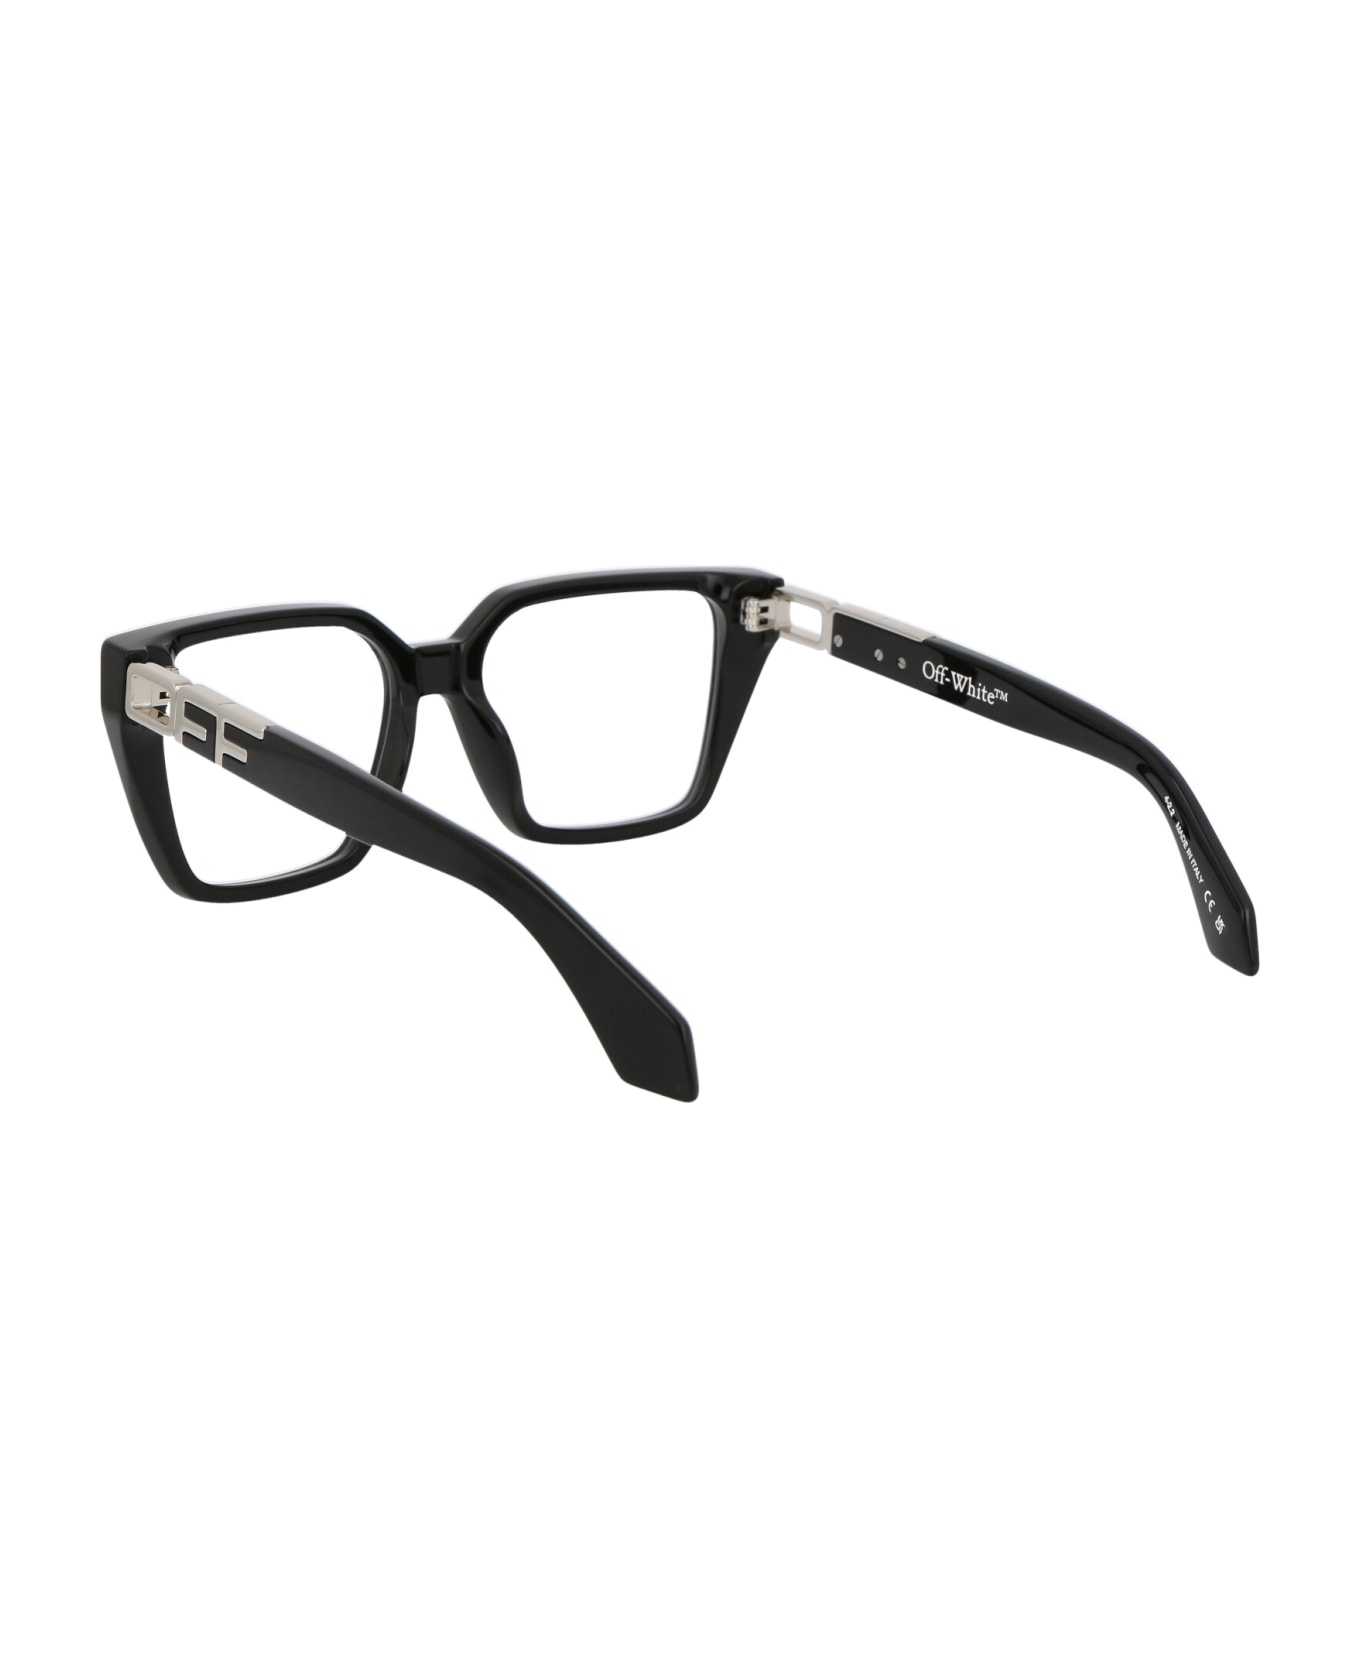 Off-White Optical Style 29 Glasses - 1000 BLACK BLUE BLOCK アイウェア